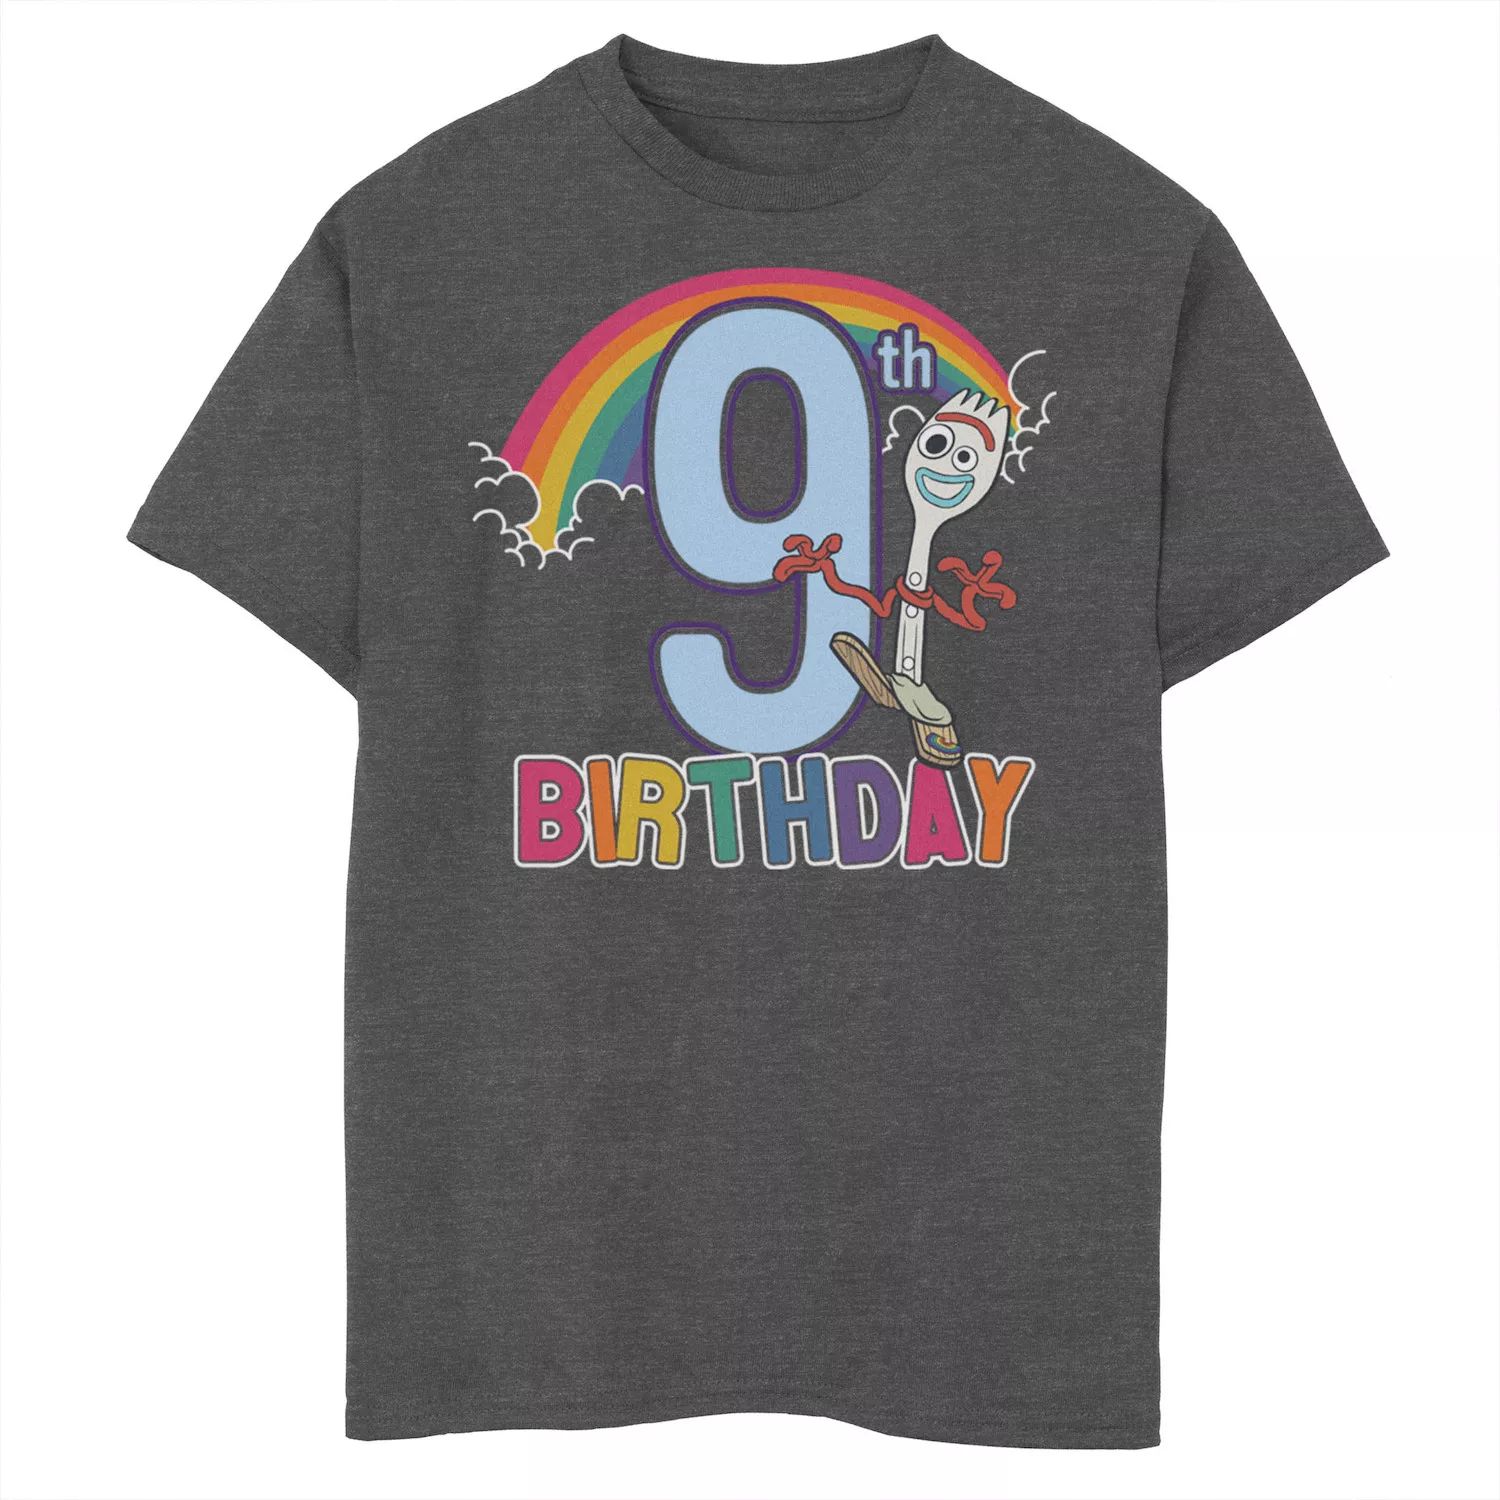 Футболка Forky с рисунком «9th Rainbow» на день рождения для мальчиков 8–20 лет Disney/Pixar «История игрушек 4» Disney / Pixar футболка forky с рисунком на 3 й день рождения для мальчиков 8–20 лет disney pixar история игрушек 4 disney pixar